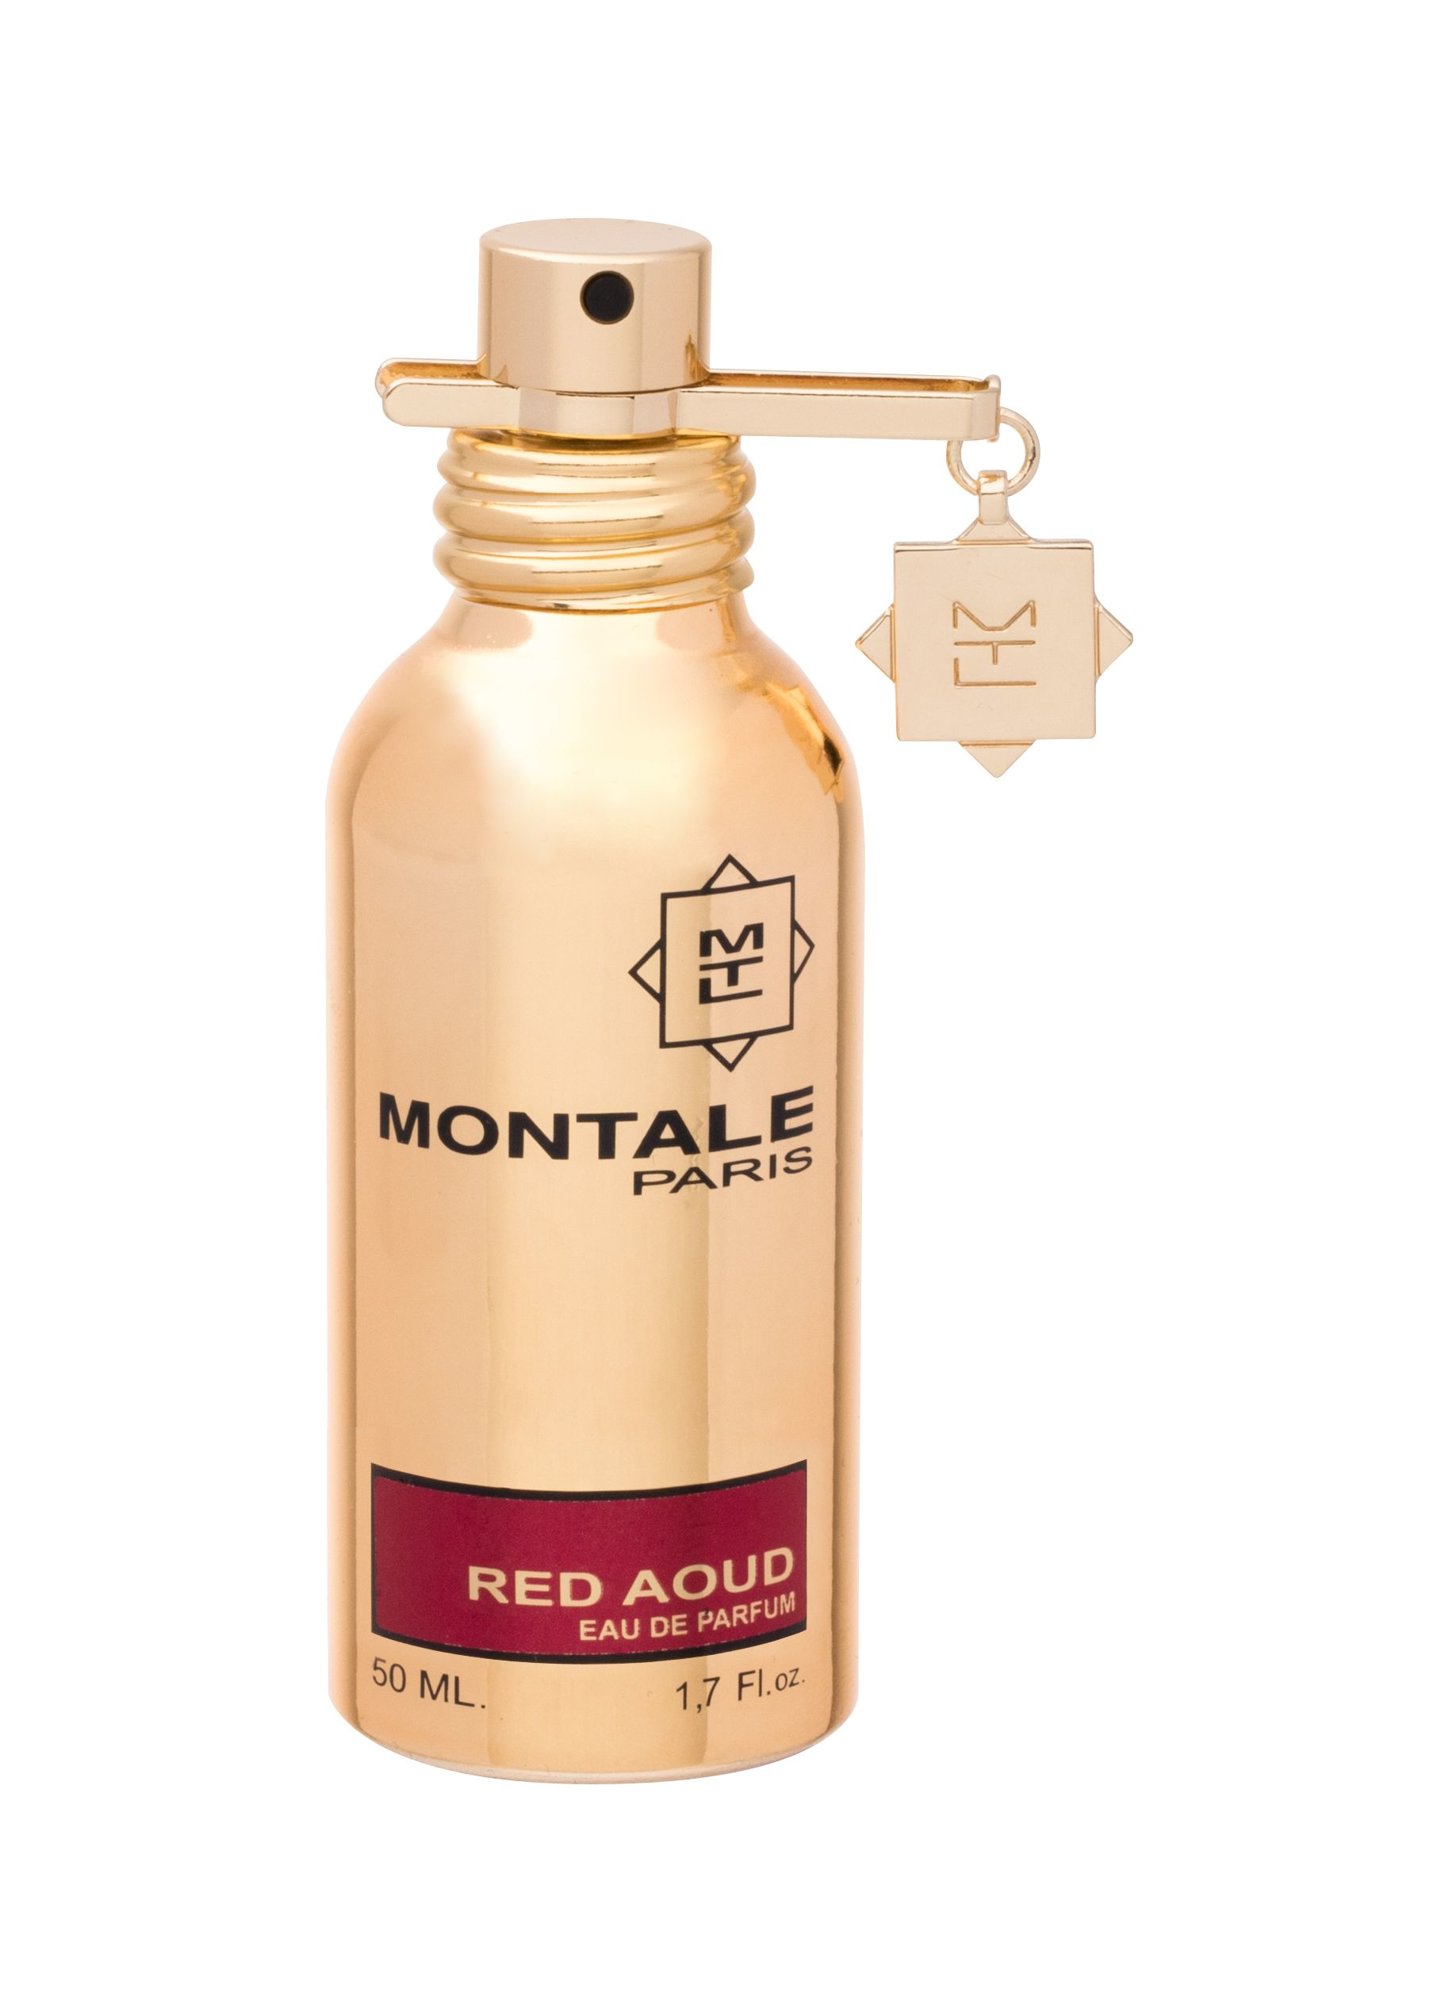 Montale Paris Red Aoud